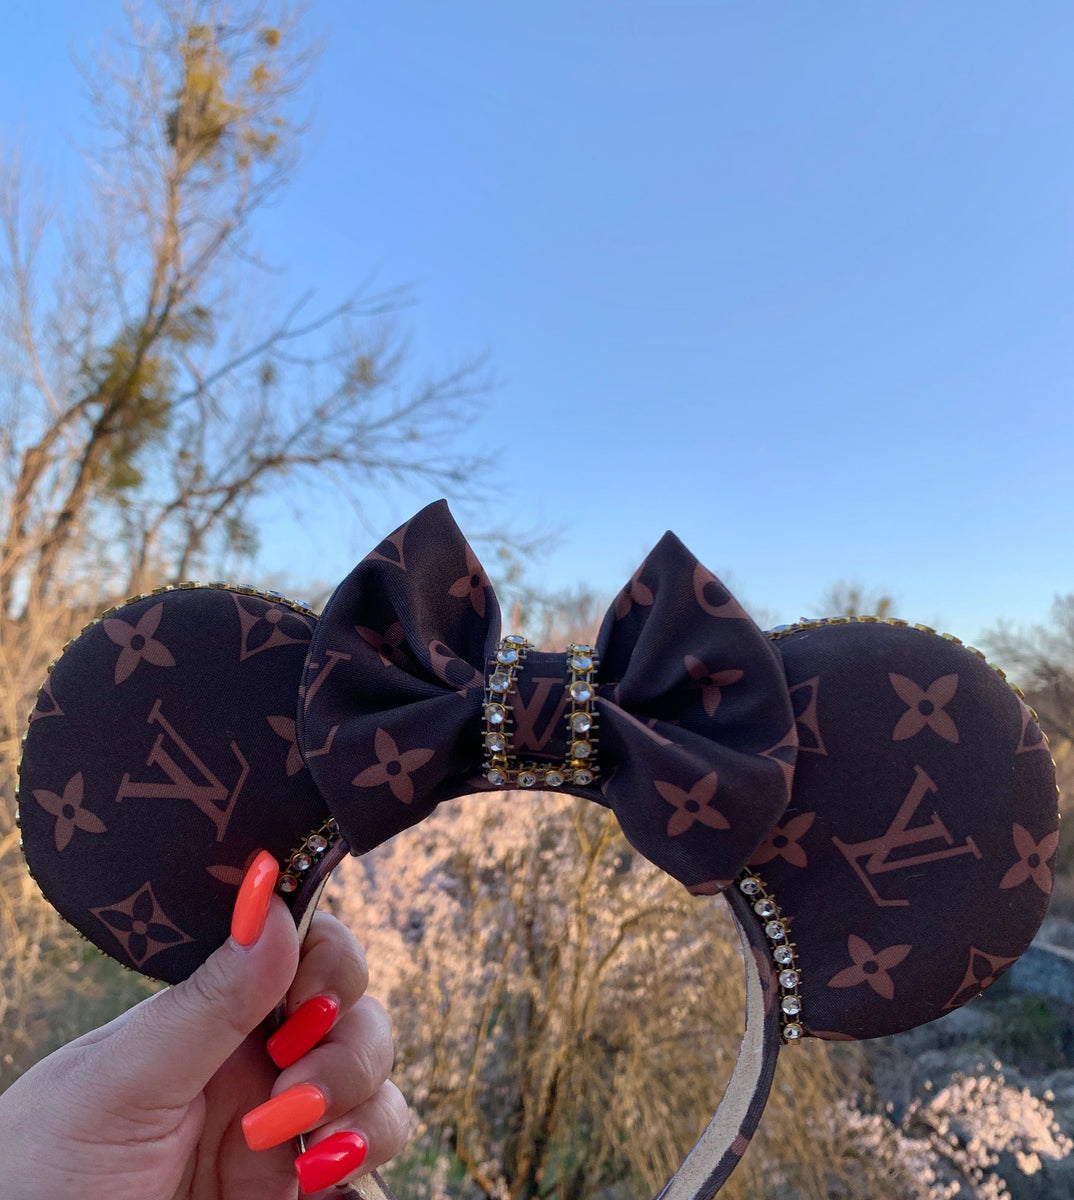 Louis Vuitton Mickey Mouse Headband